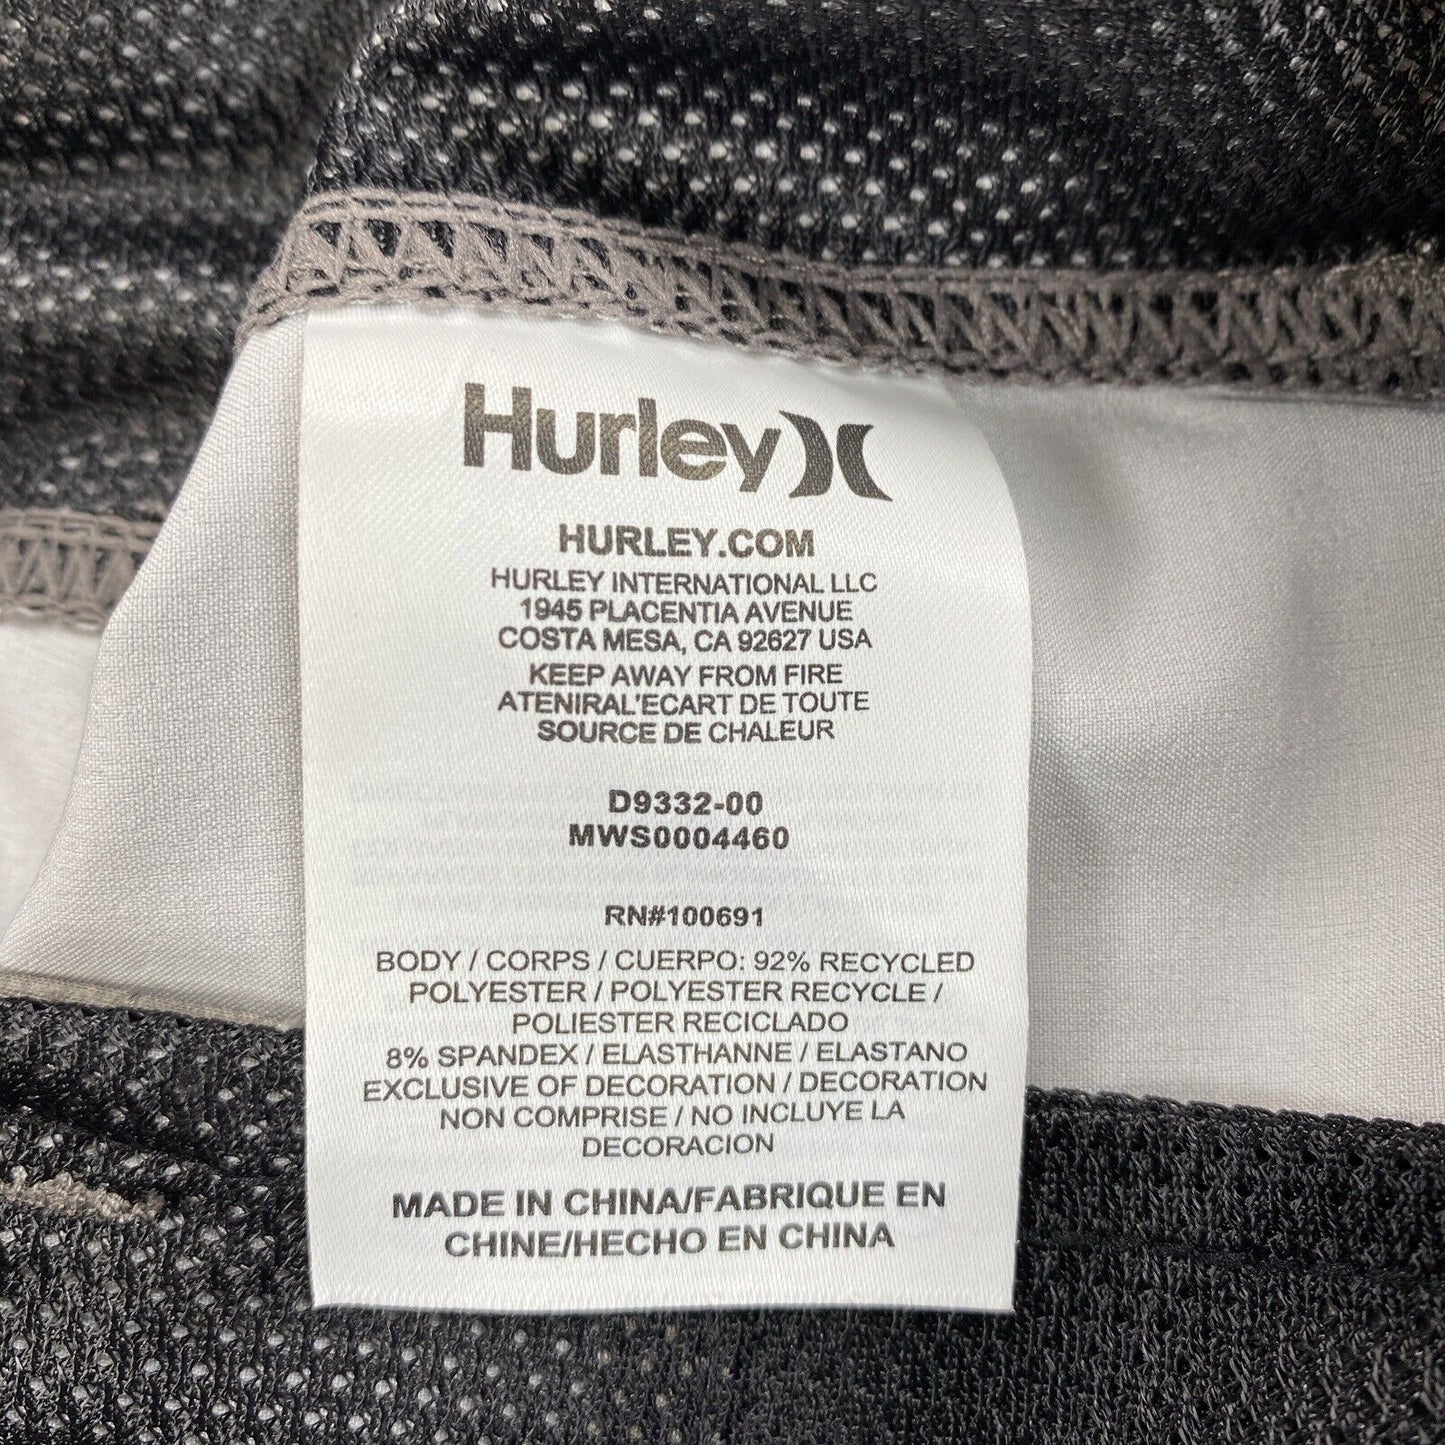 NEW Hurley Men's Gray Modern 20.5in Phantom Shorts - 34